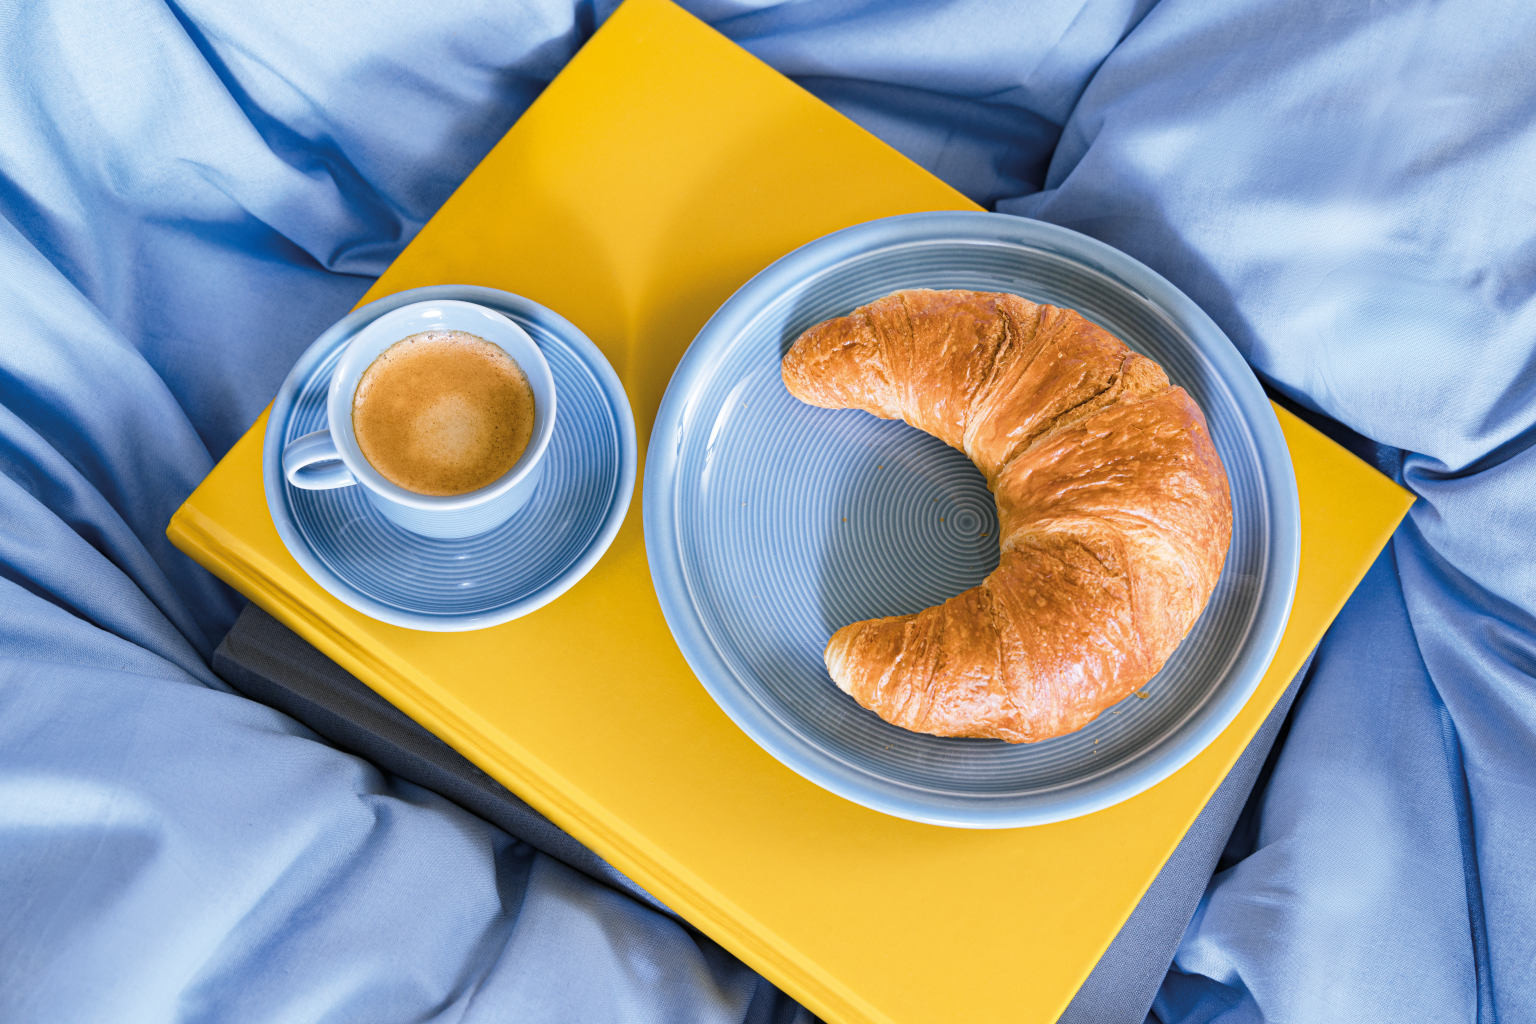 Thomas Trend Arctic Blue Teller mit Croissant und Kaffeetasse auf gelben Buch auf blauer Bettdecke